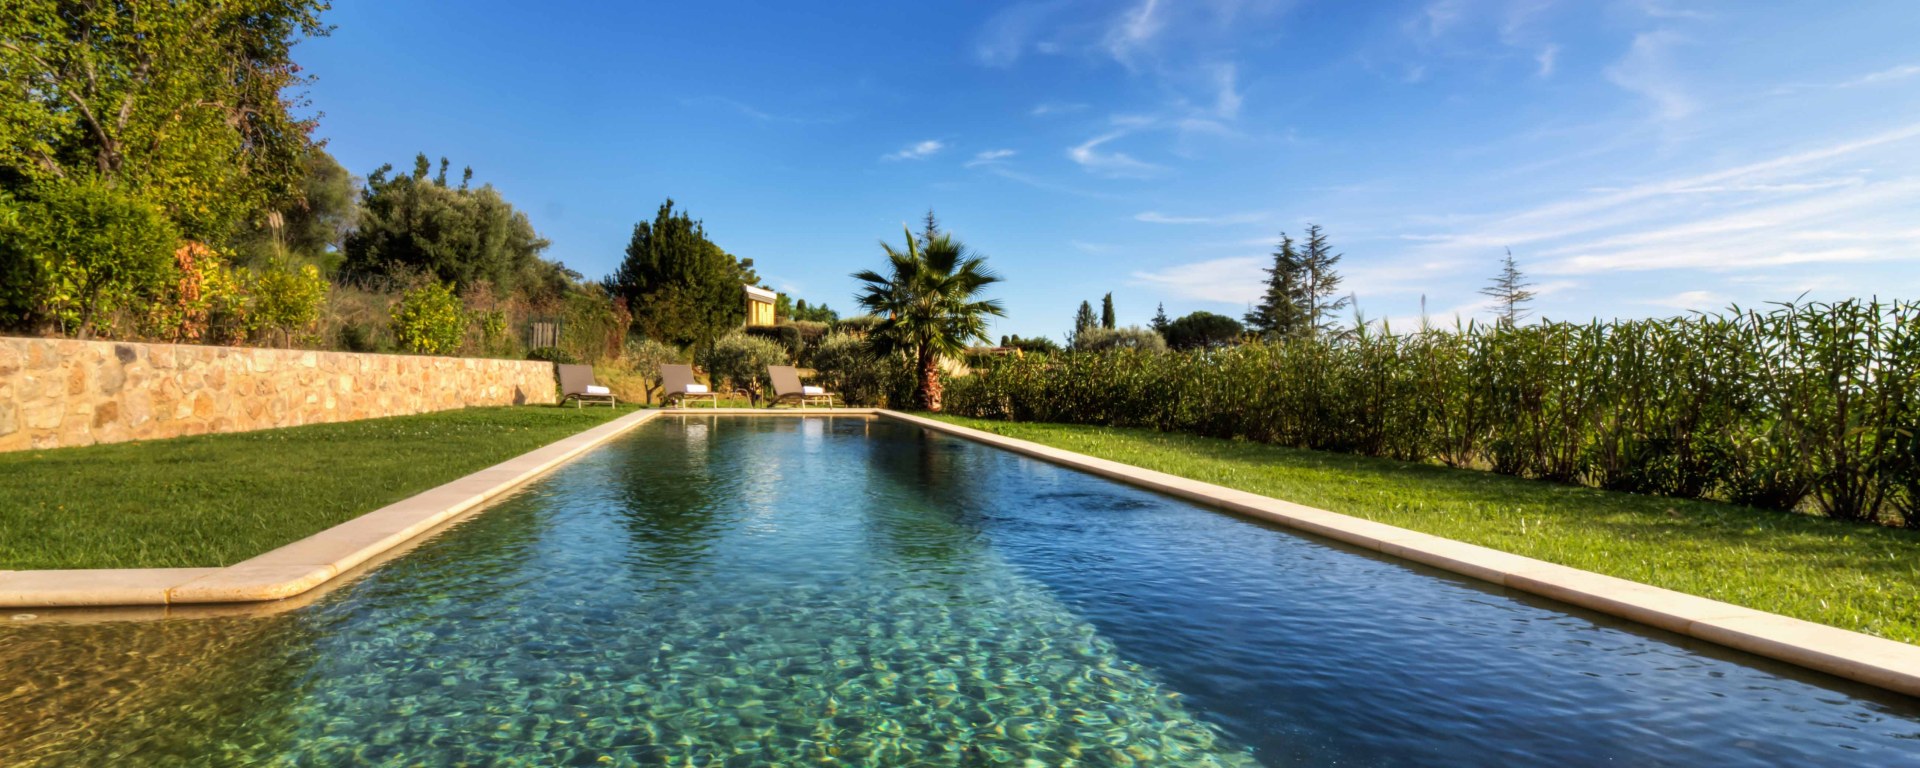 Luxusreise Südfrankreich - Urlaub im Ferienhaus